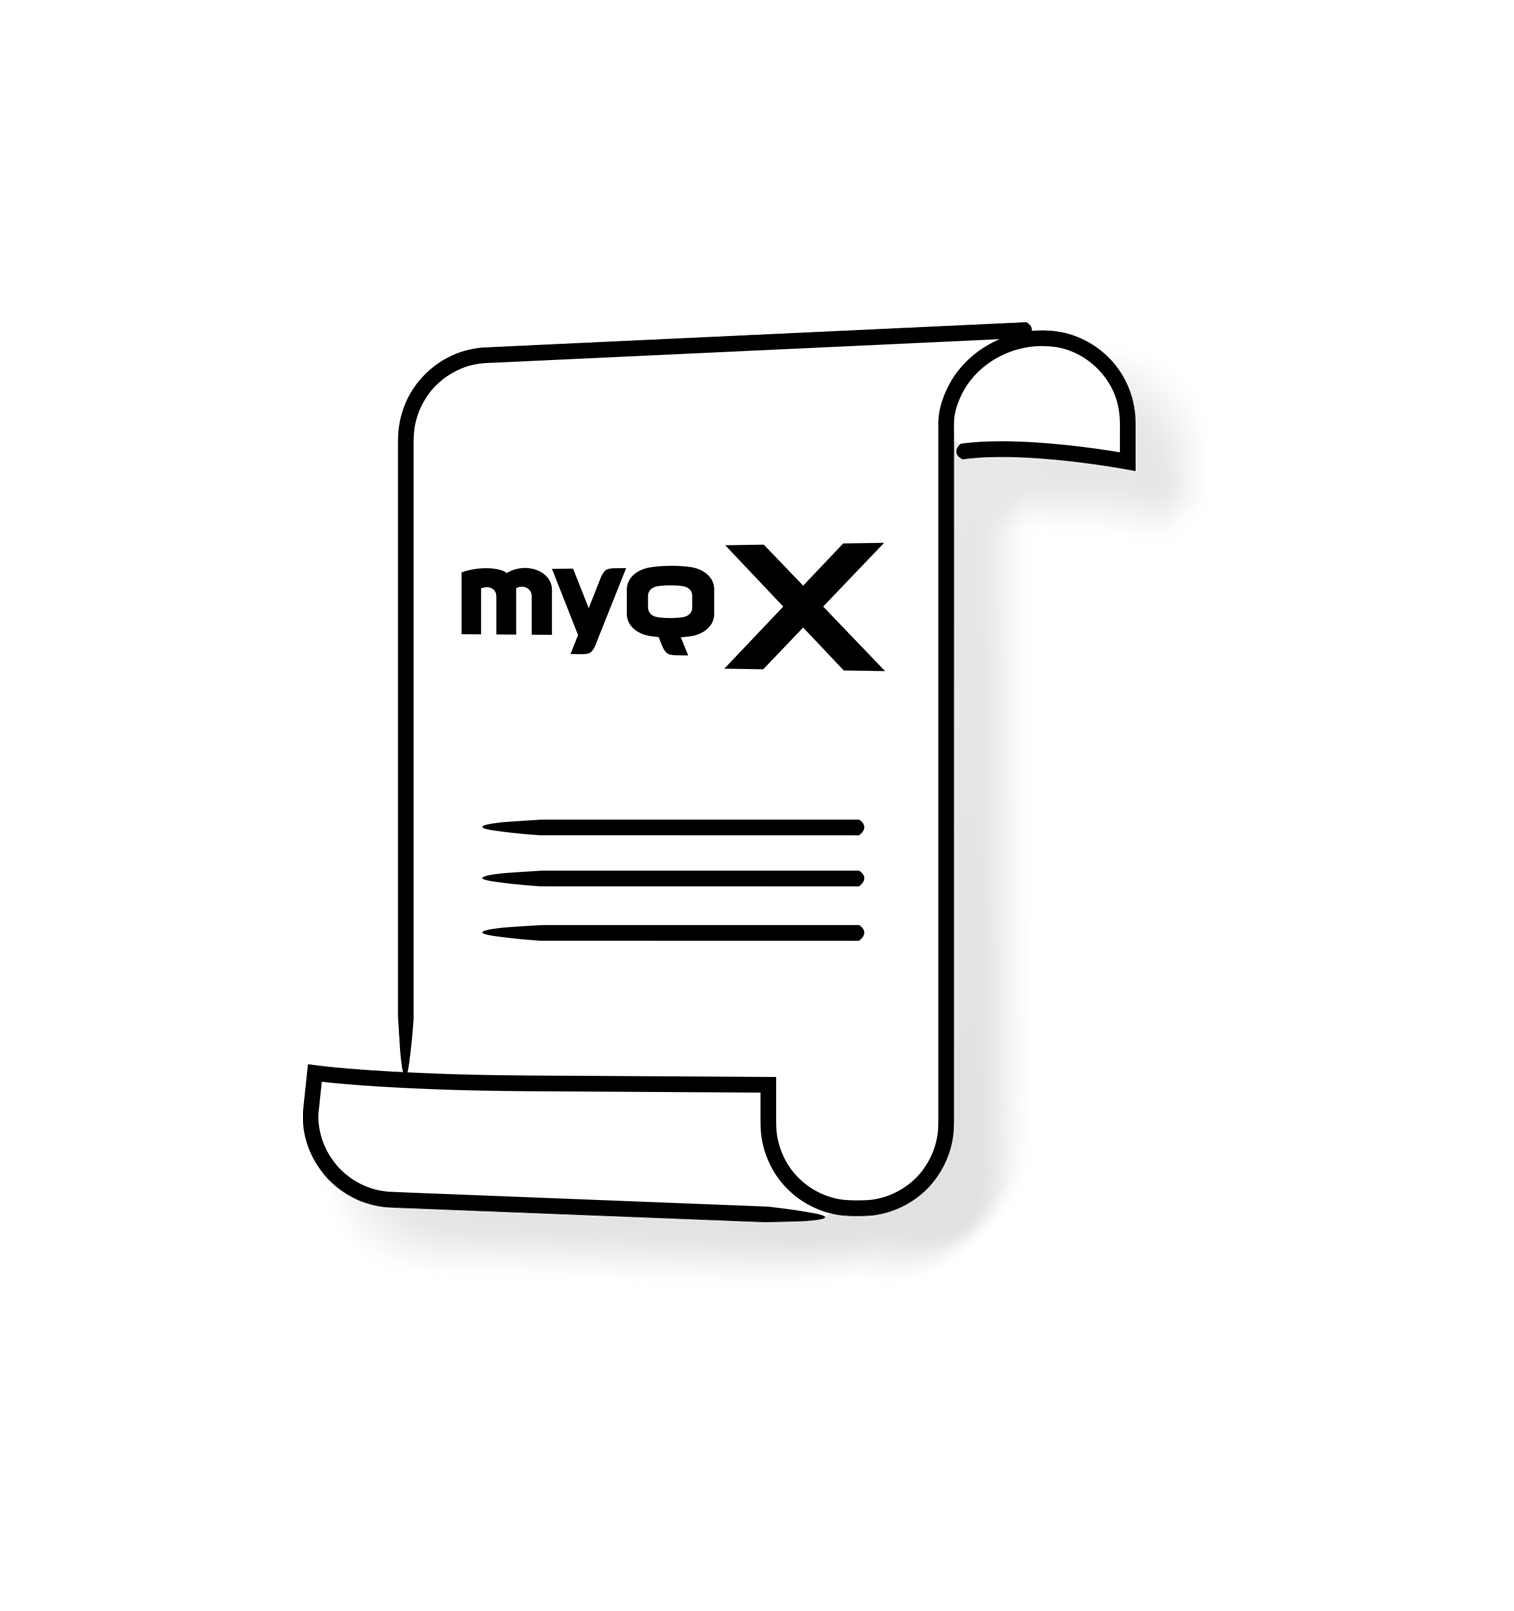 Documenti relativi a MyQ X